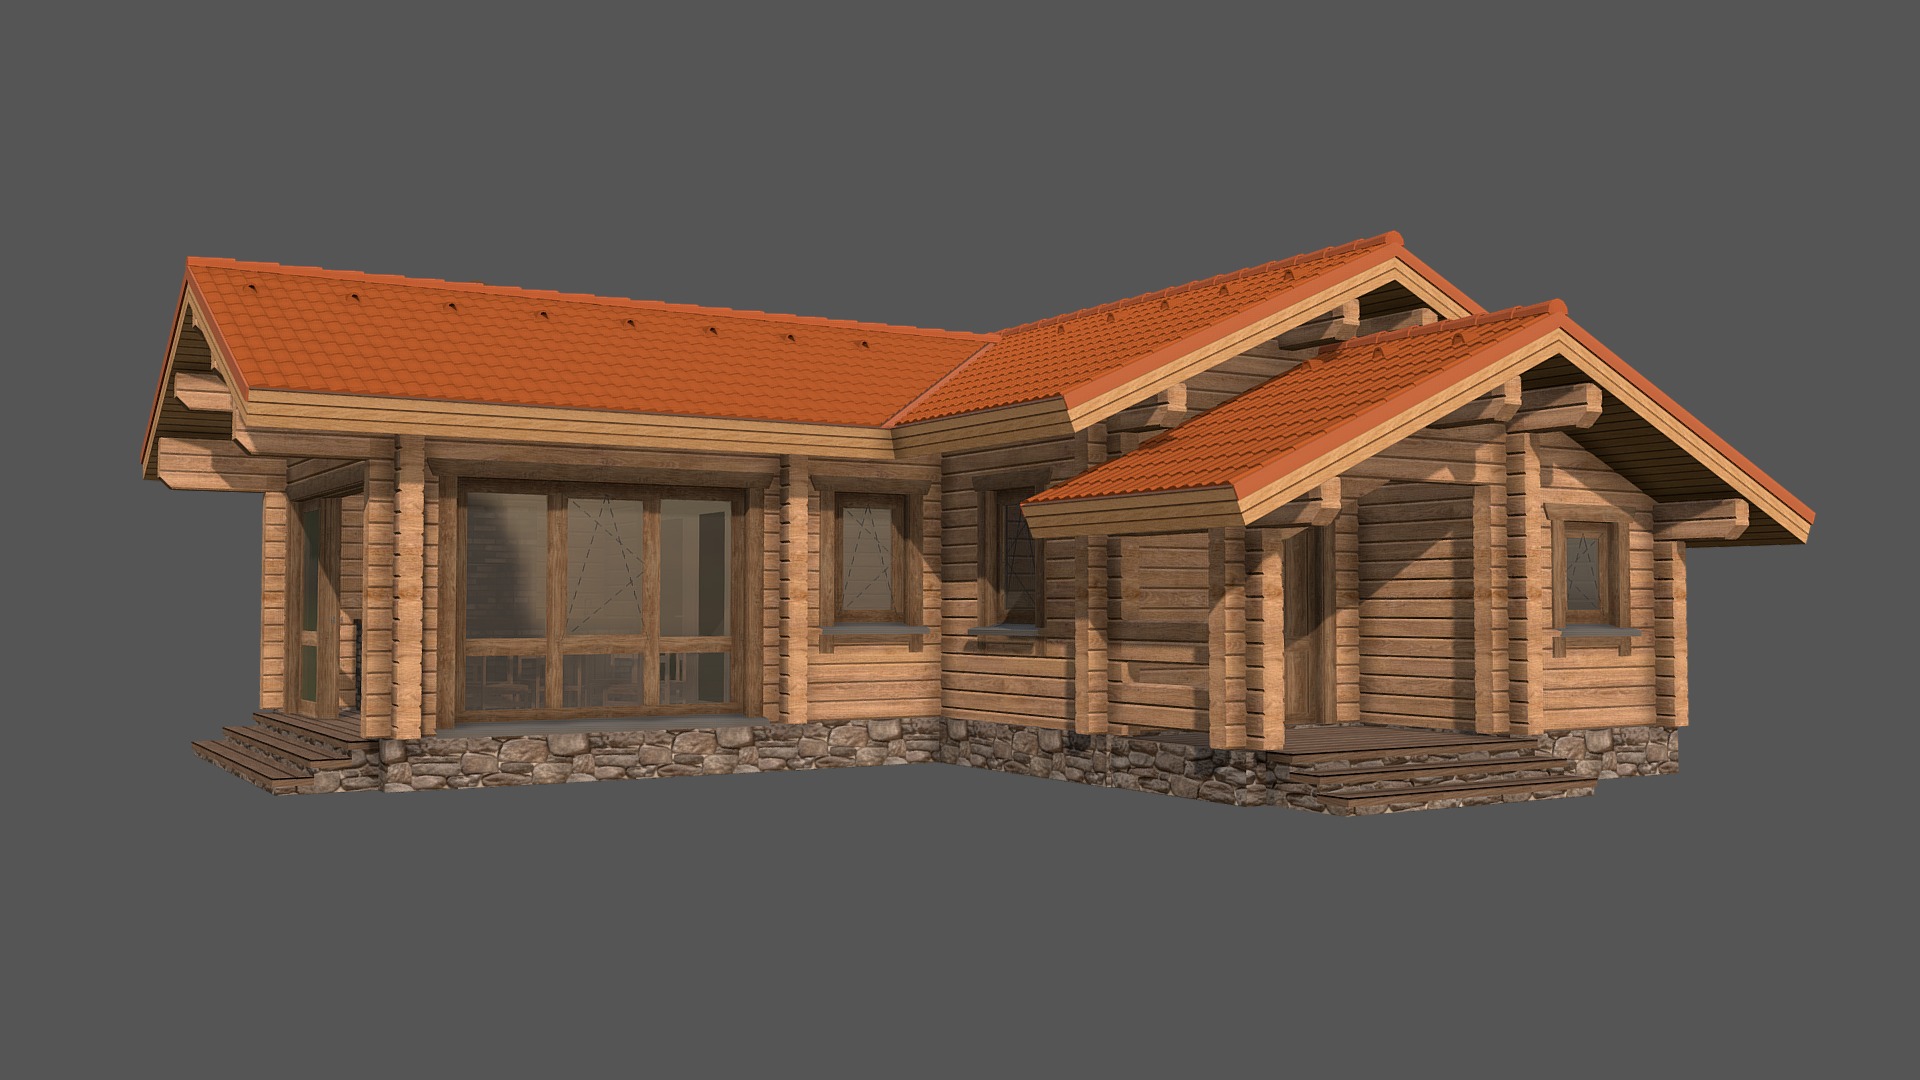 3D model Проект бани 1.0 (Ногинск) - This is a 3D model of the Проект бани 1.0 (Ногинск). The 3D model is about a house with a stone wall.